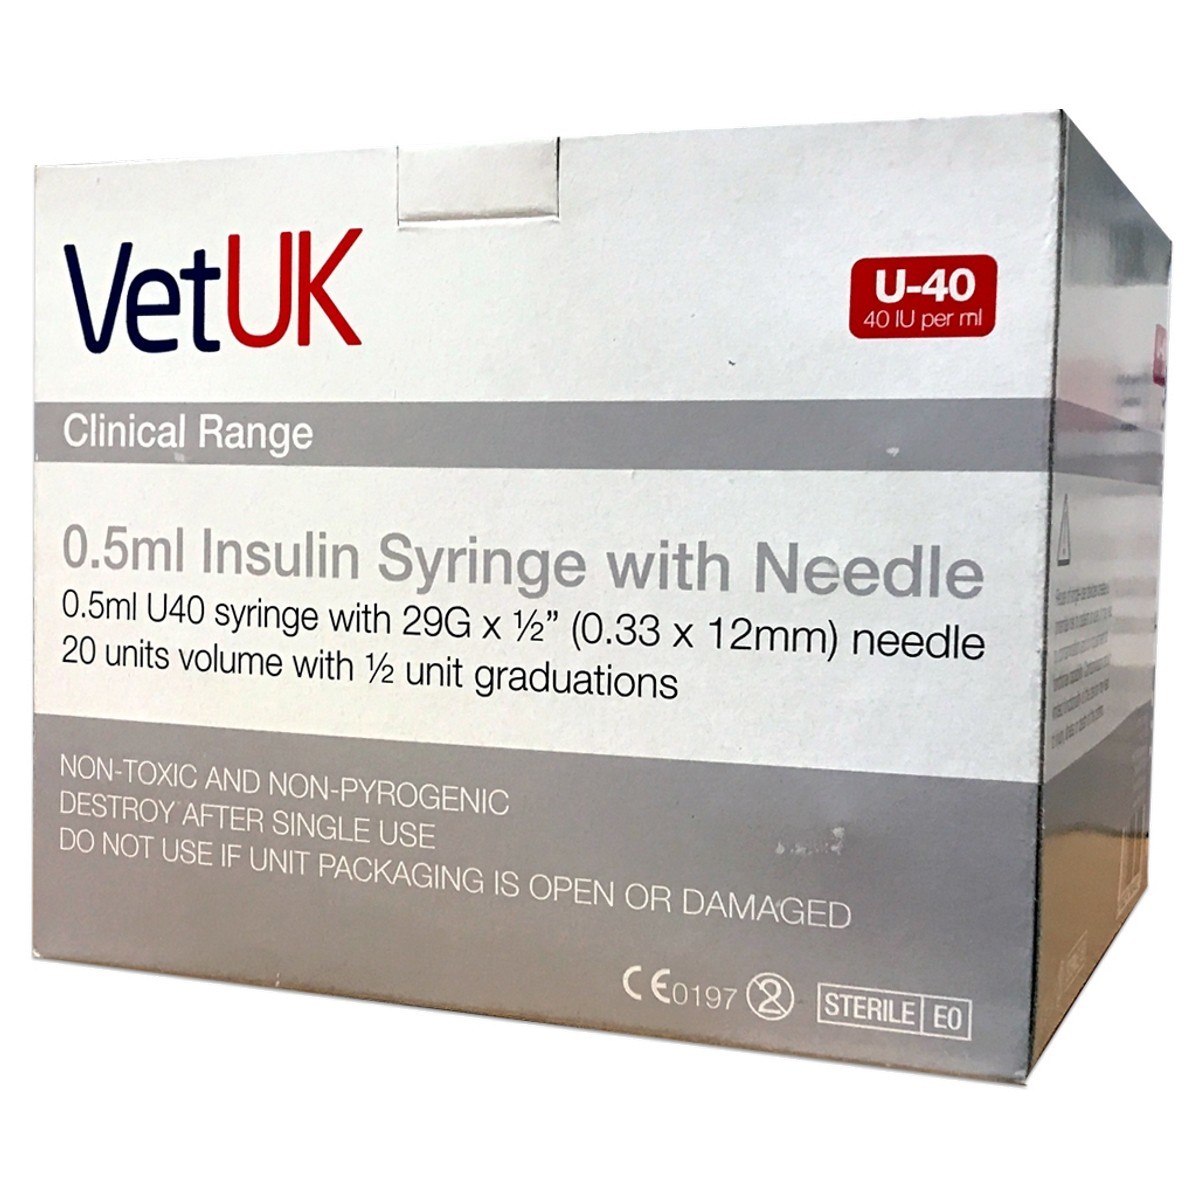 Vetuk 0 5ml U40 Insulin Syringe With Needle Box Of 100 From 13 99